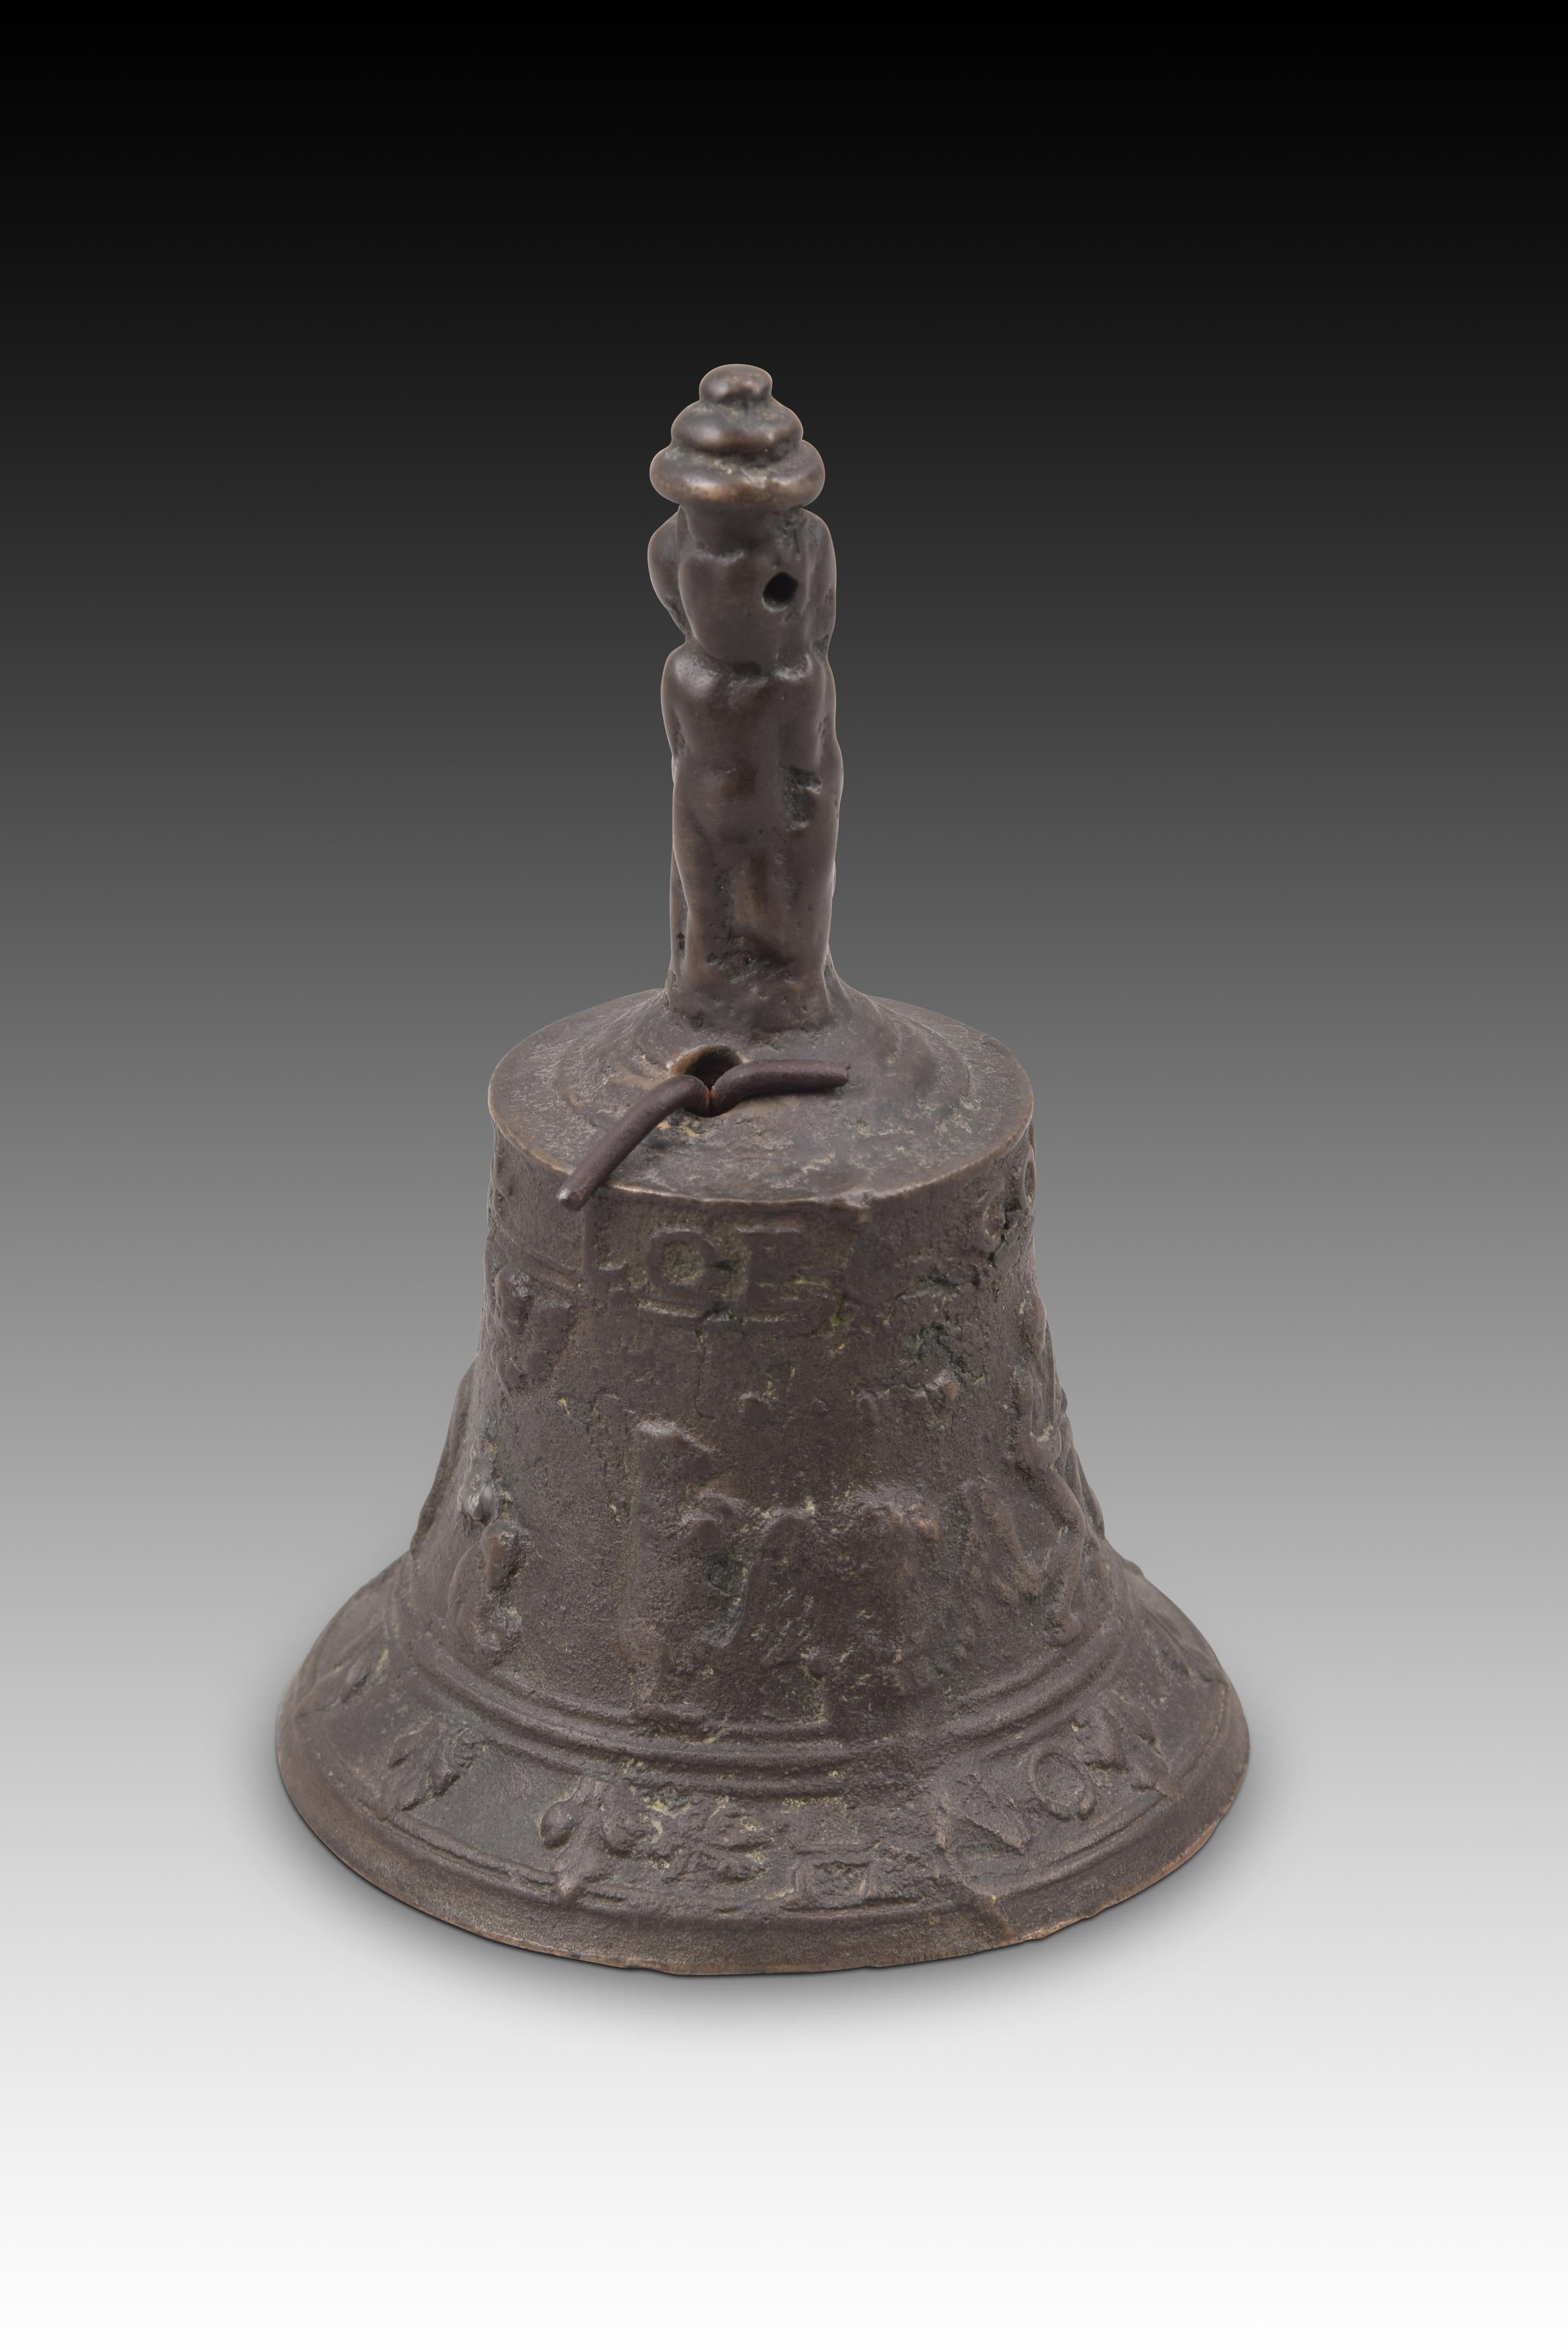 European Mechelen bronze bell. 16th century